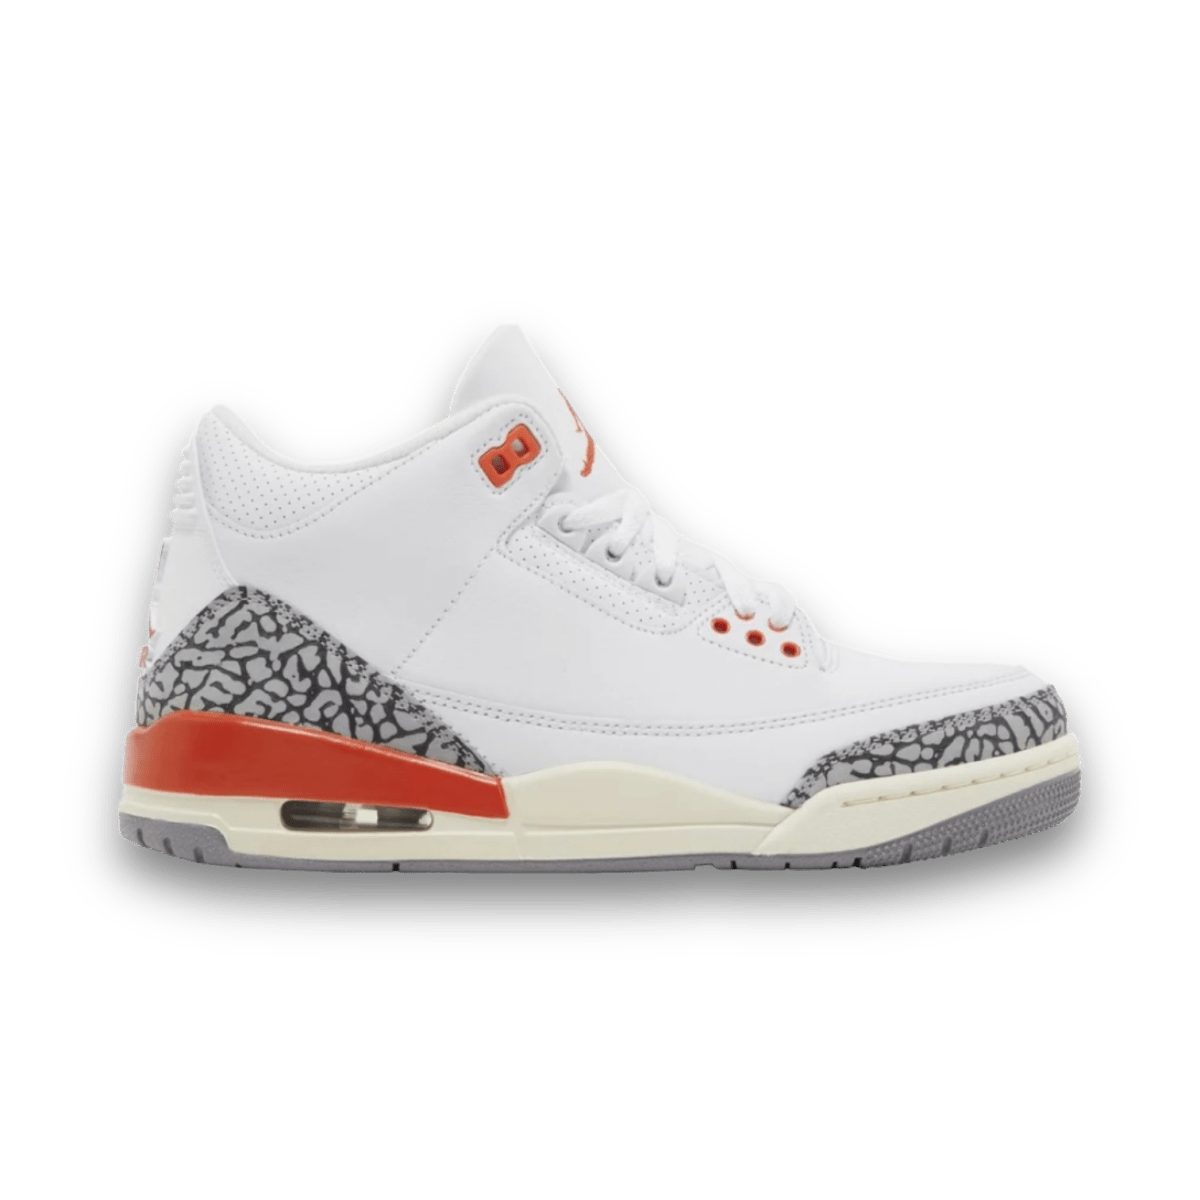 Air Jordan 3 Retro 'Georgia Peach' - Women - Mid Sneaker - Jawns on Fire Sneakers & Streetwear